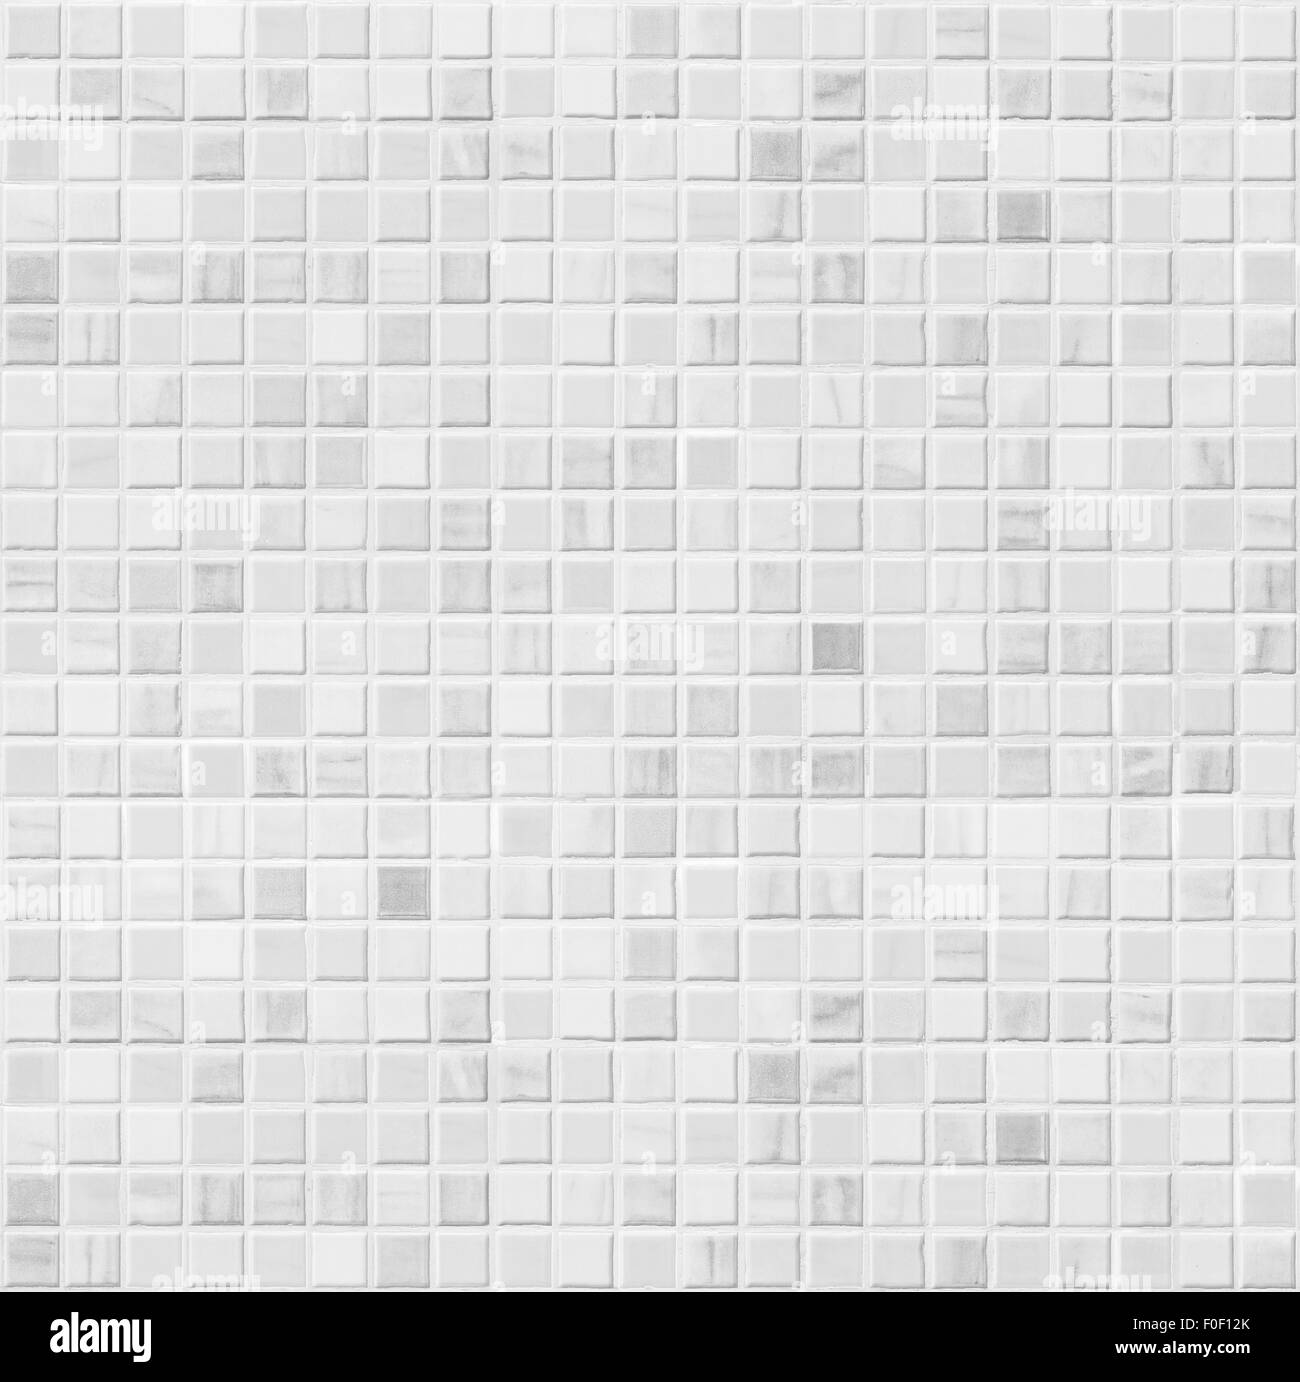 Ceramica bianca del muro del bagno piastrelle modello senza giunture Foto Stock